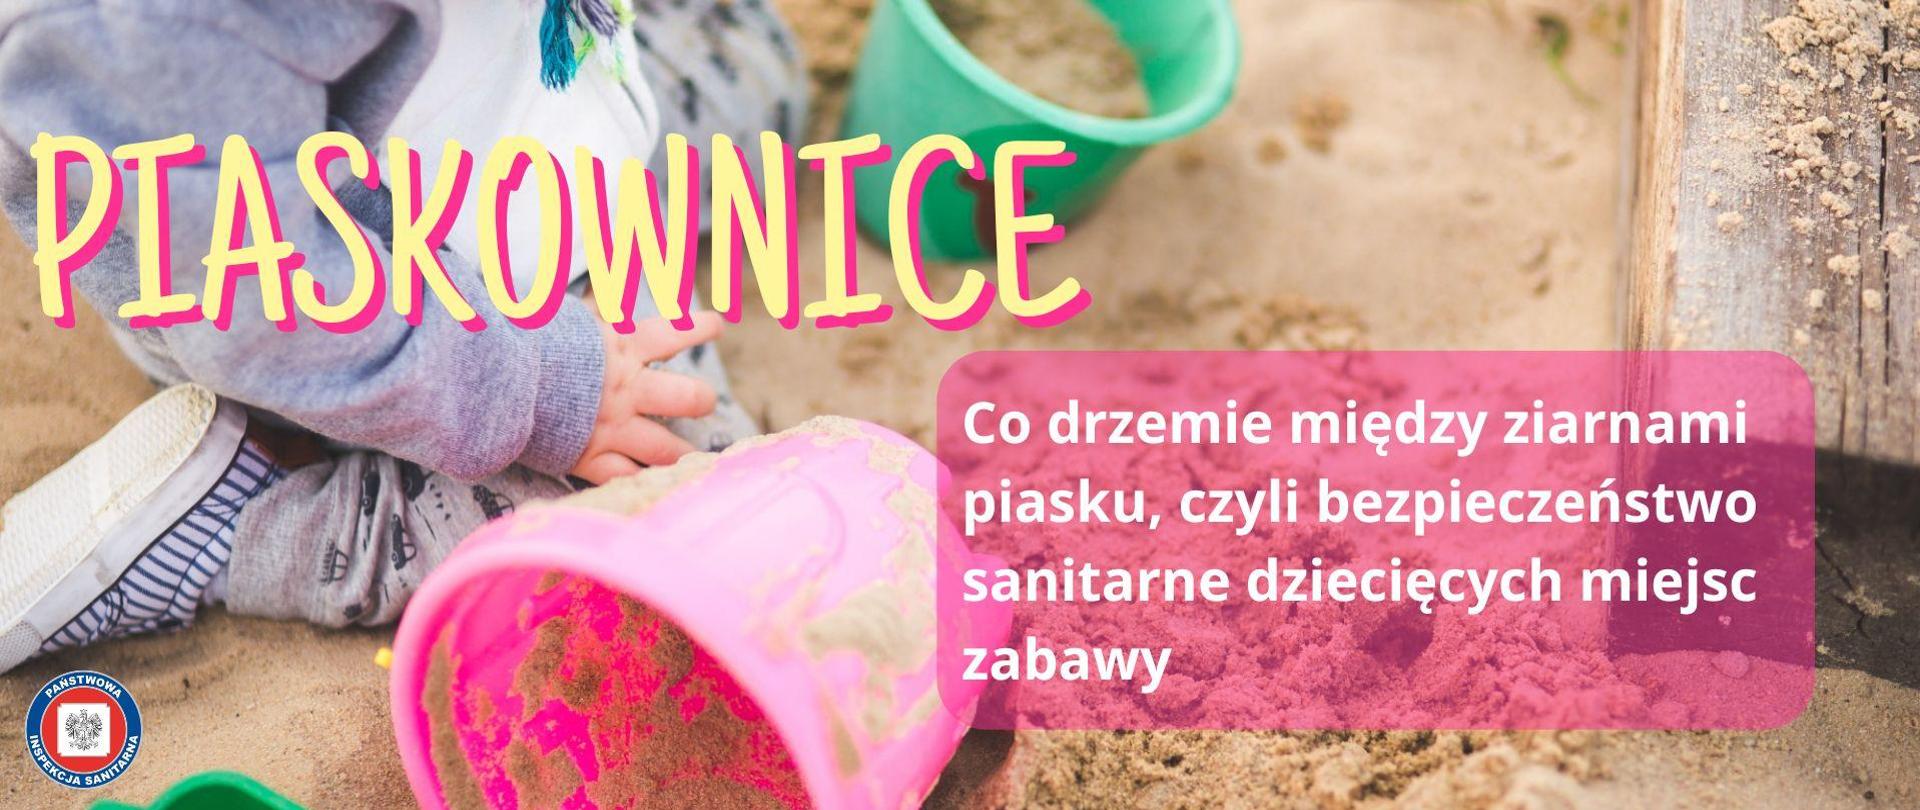 Dziecko bawiące się w piaskownicy kolorowymi zabawkami